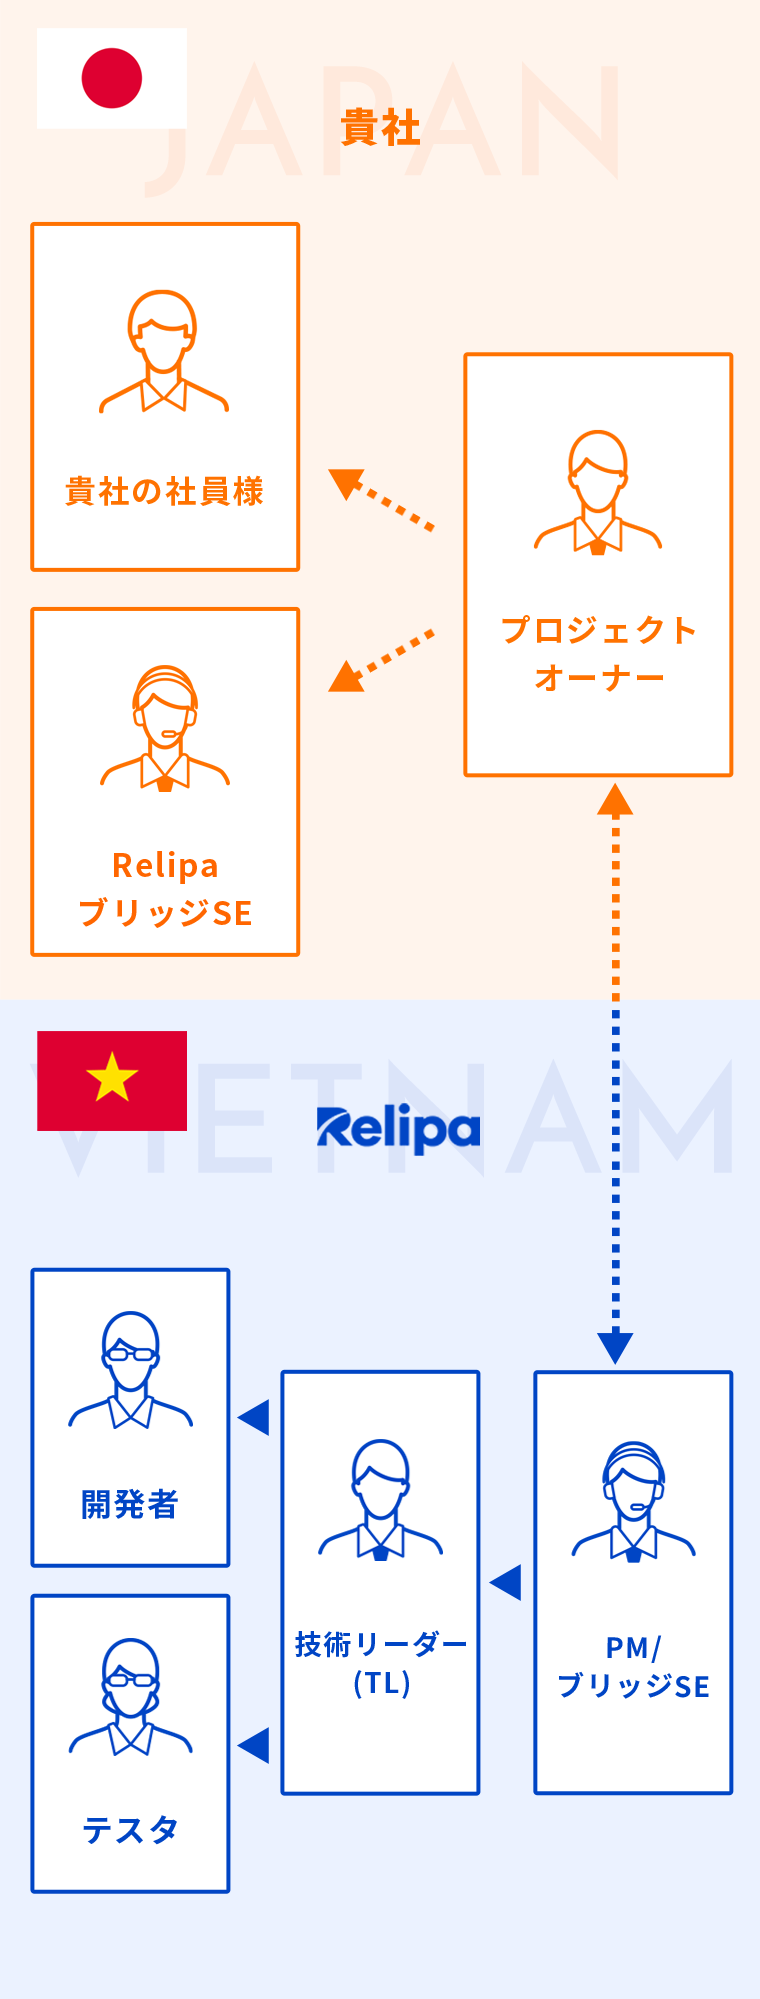 RELIPAのブリッジSEがお客様先に常駐する場合の図